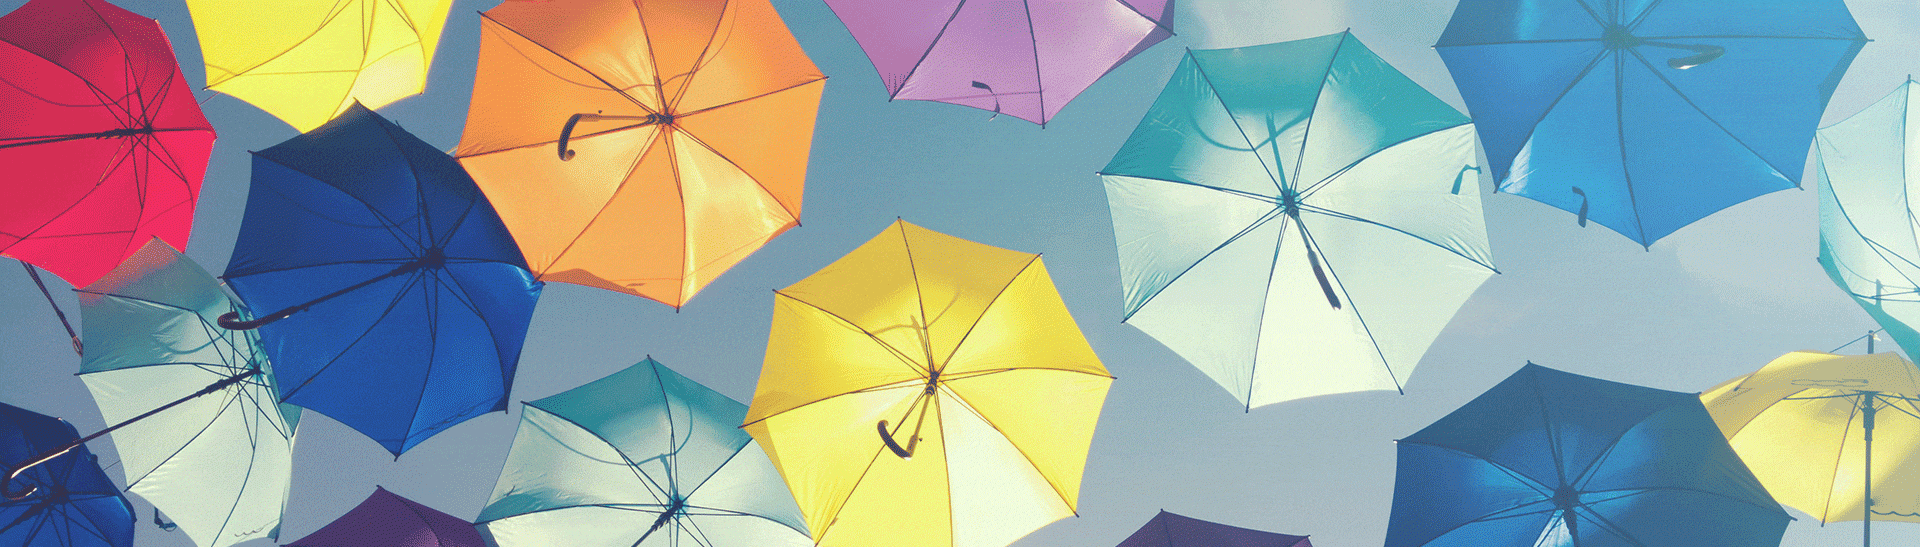 Assurance-vieillesse - image de parapluies colorés